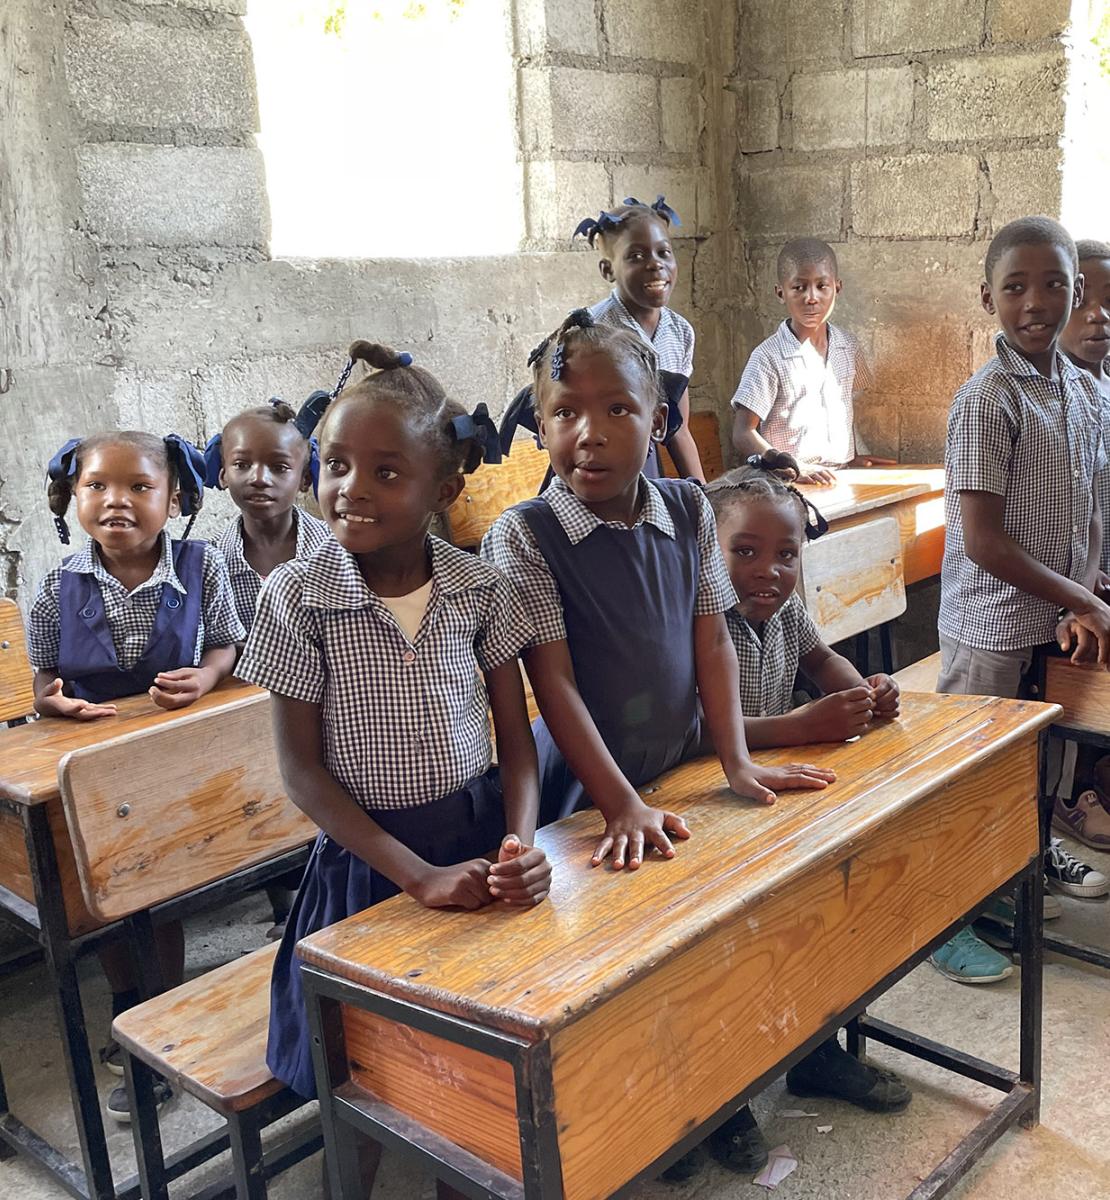 مجموعة من الطلاب بالقرب من طاولاتهم داخل مدرسة.